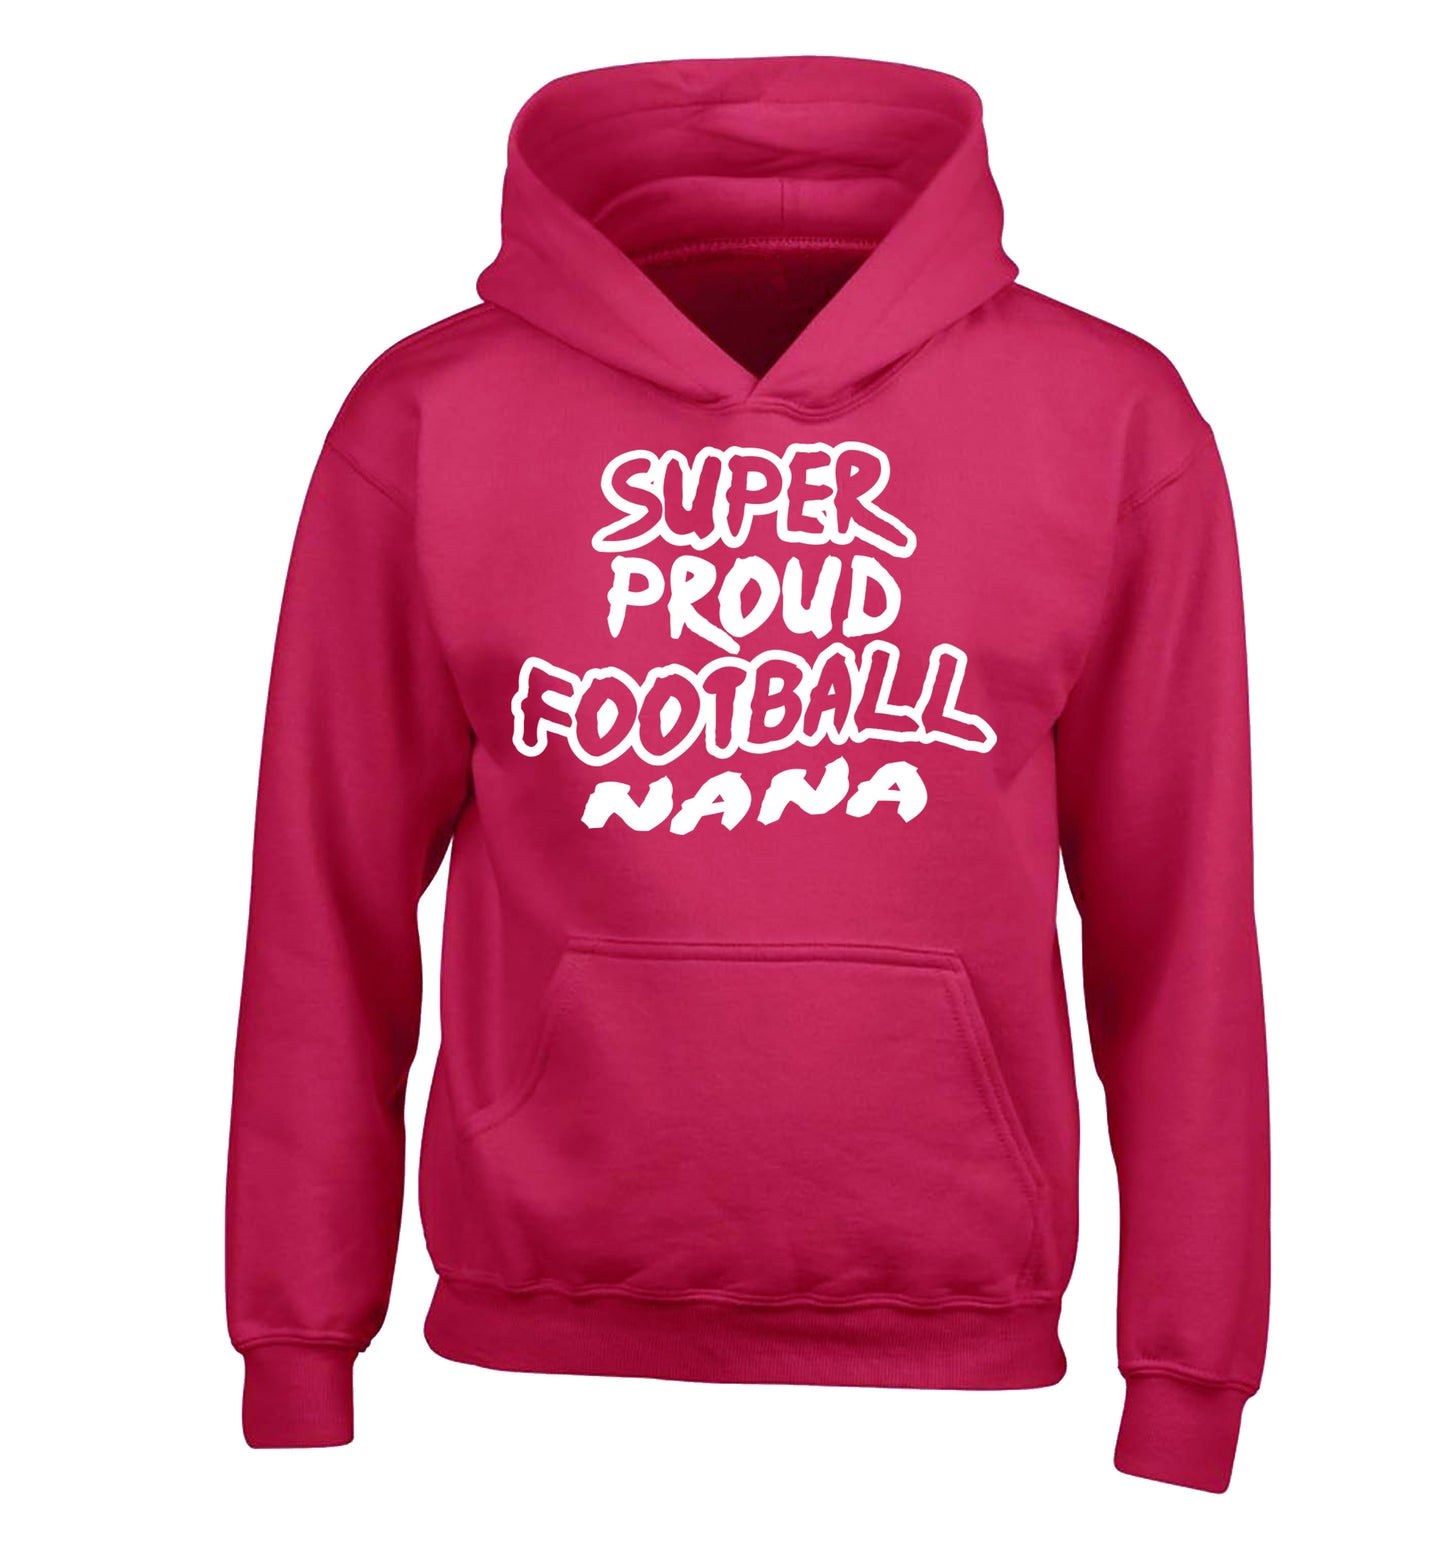 Super proud football nana children's pink hoodie 12-14 Years